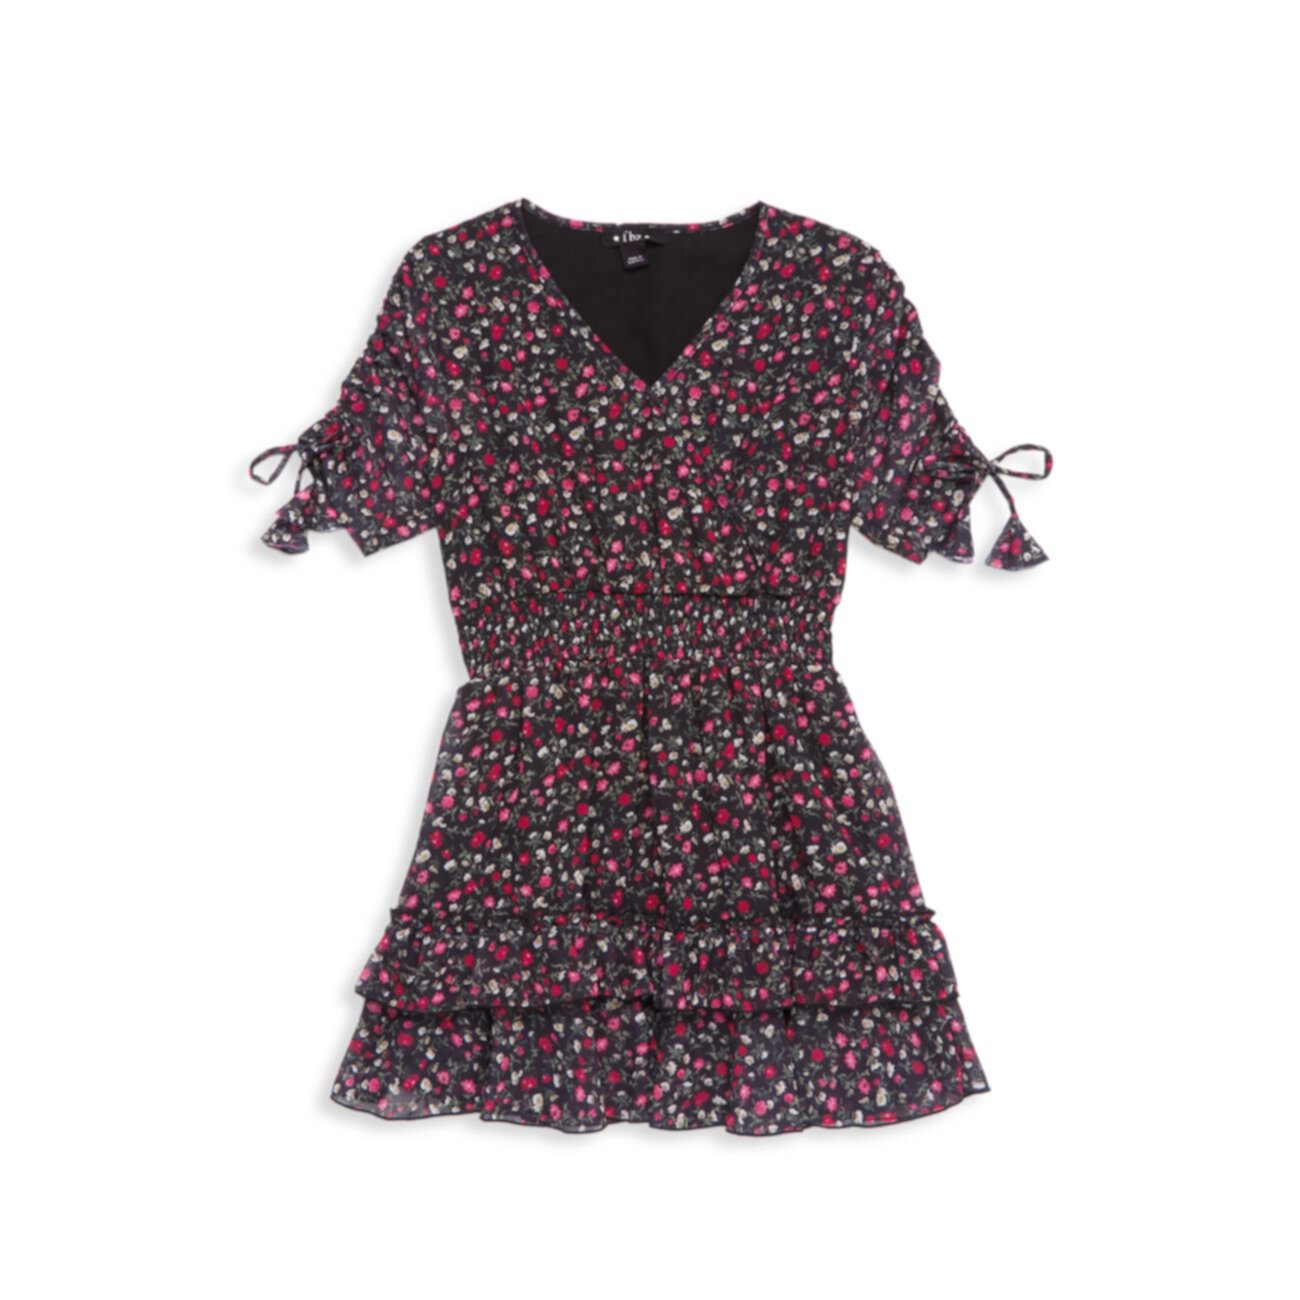 Присборенное платье с цветочным принтом для маленьких девочек и девочек Flowers By Zoe